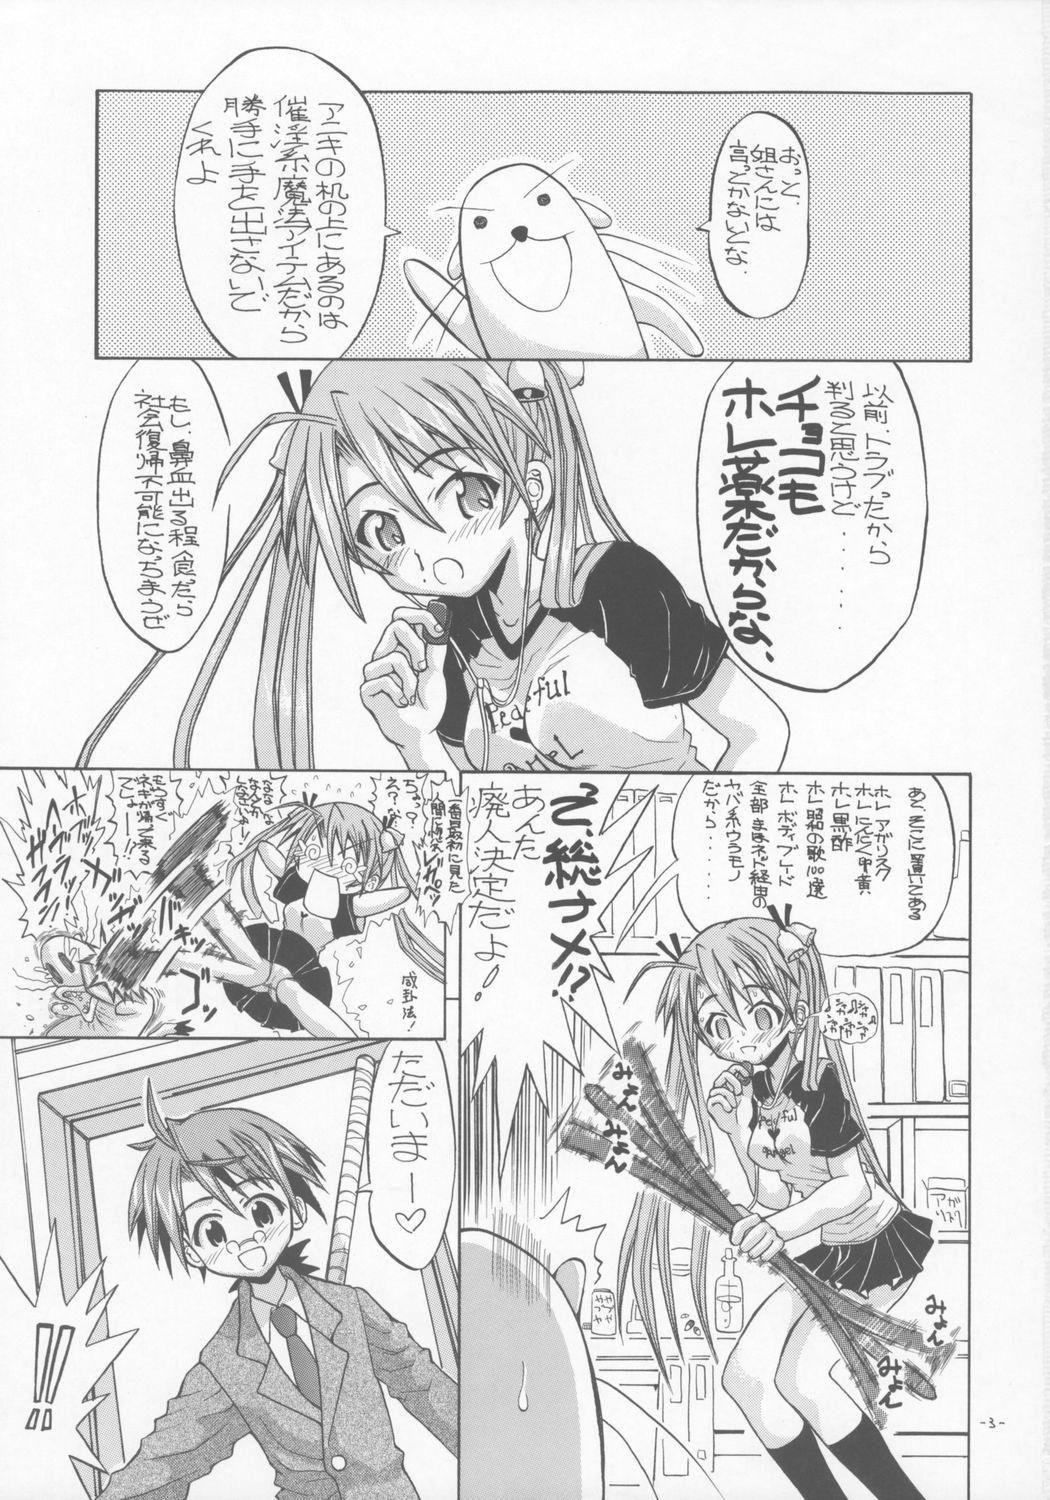 Teenpussy AsuNAX! - Mahou sensei negima Free Amateur - Page 2